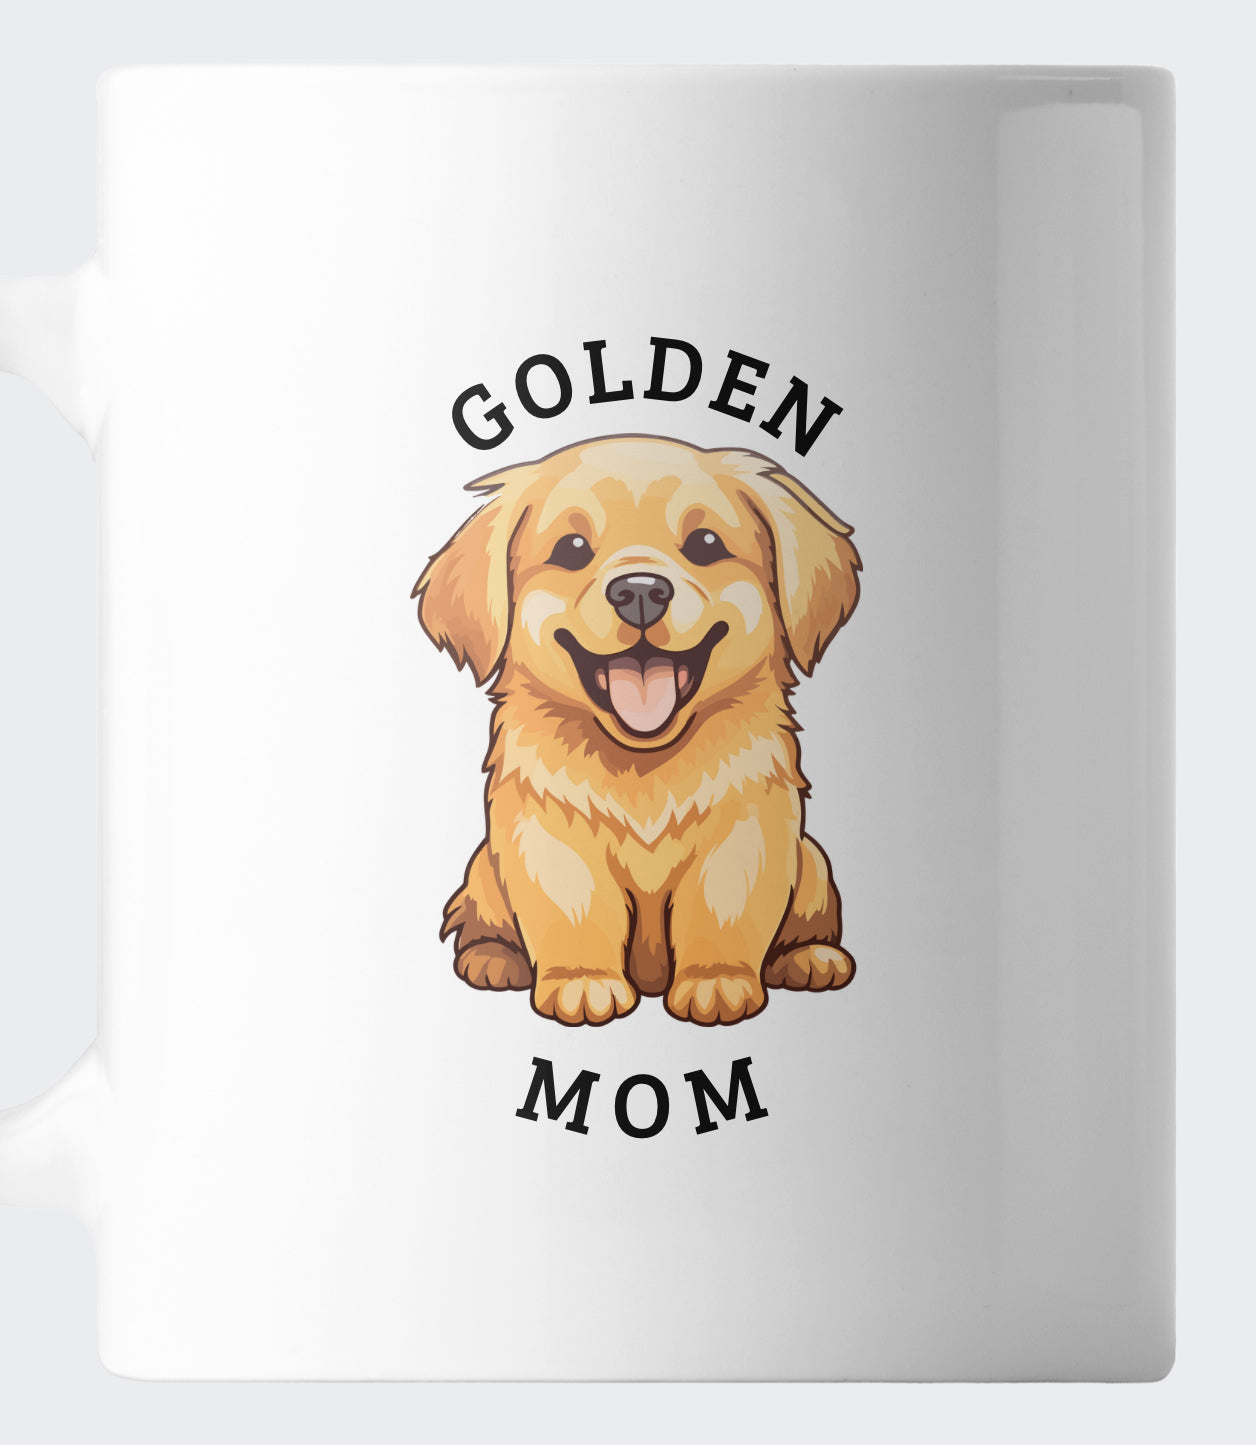 Golden Mom Mug